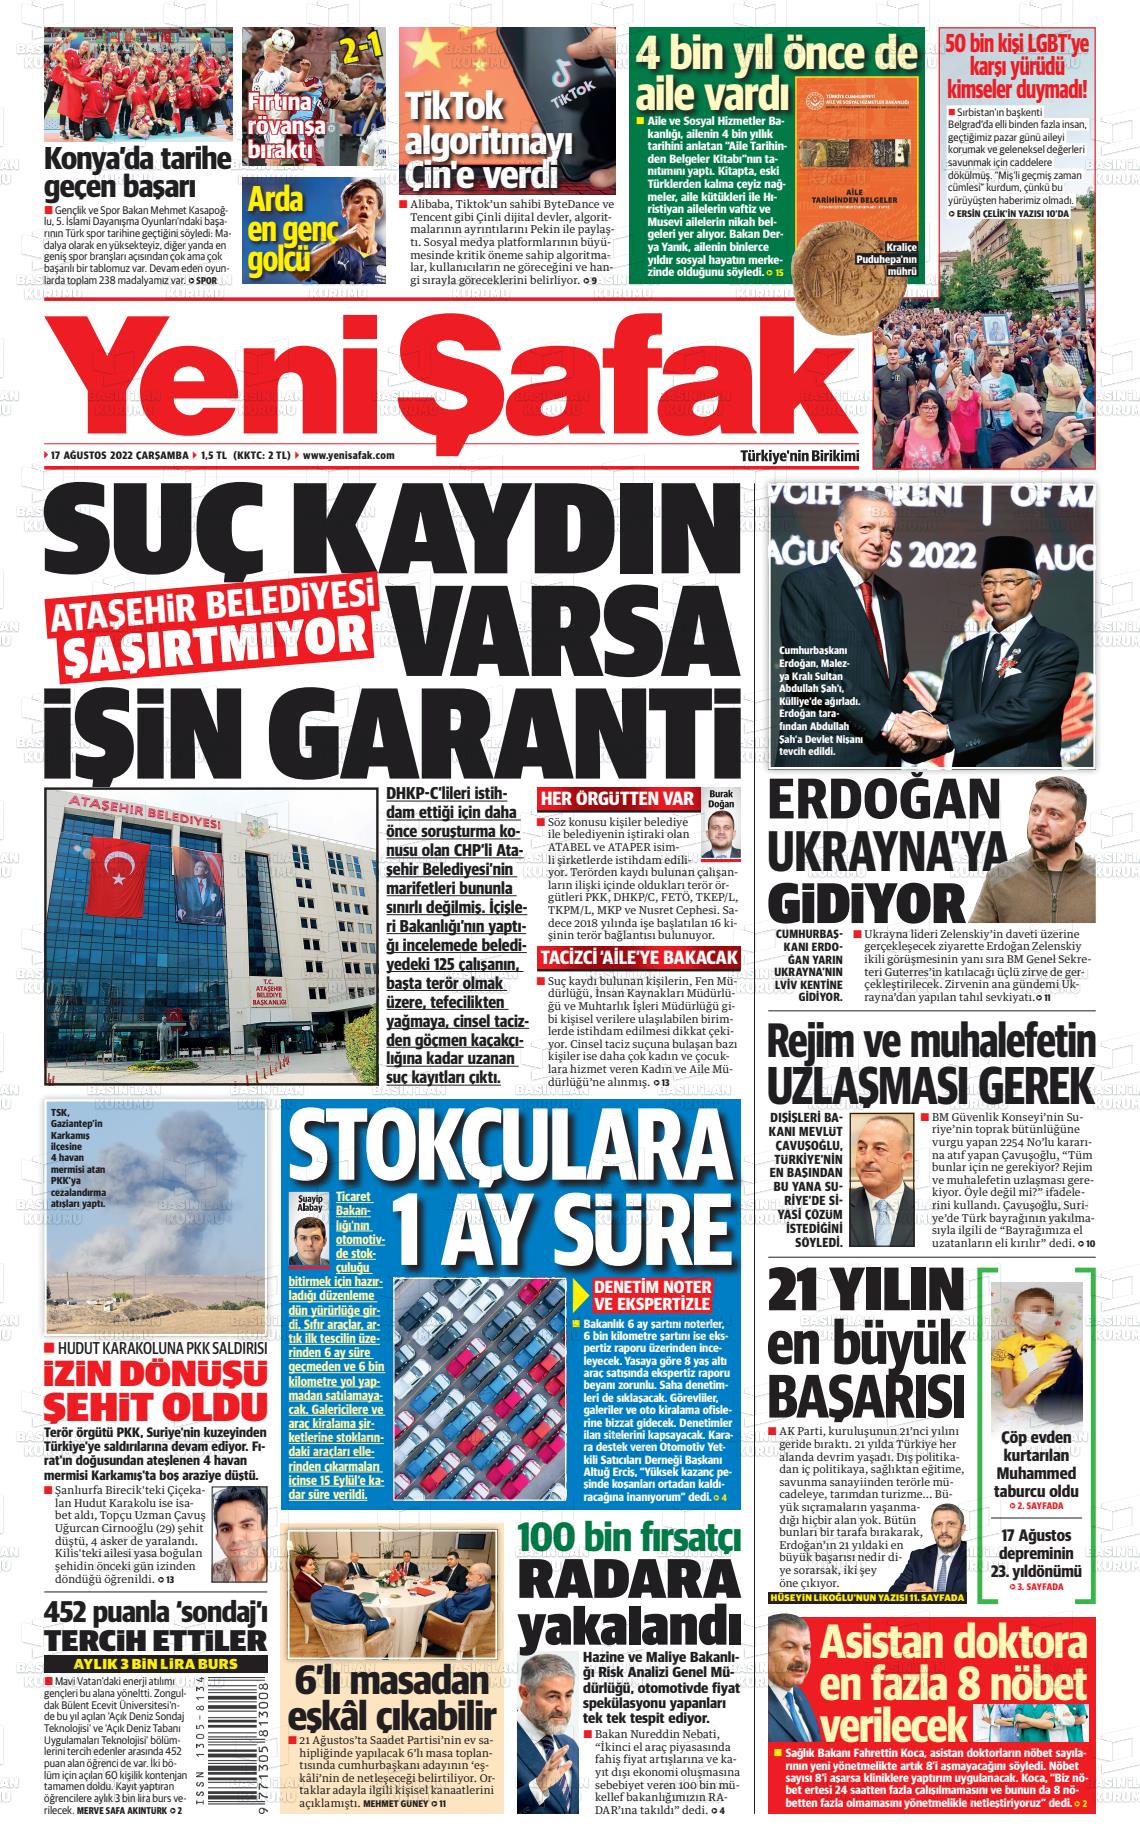 17 Ağustos 2022 Yeni Şafak Gazete Manşeti